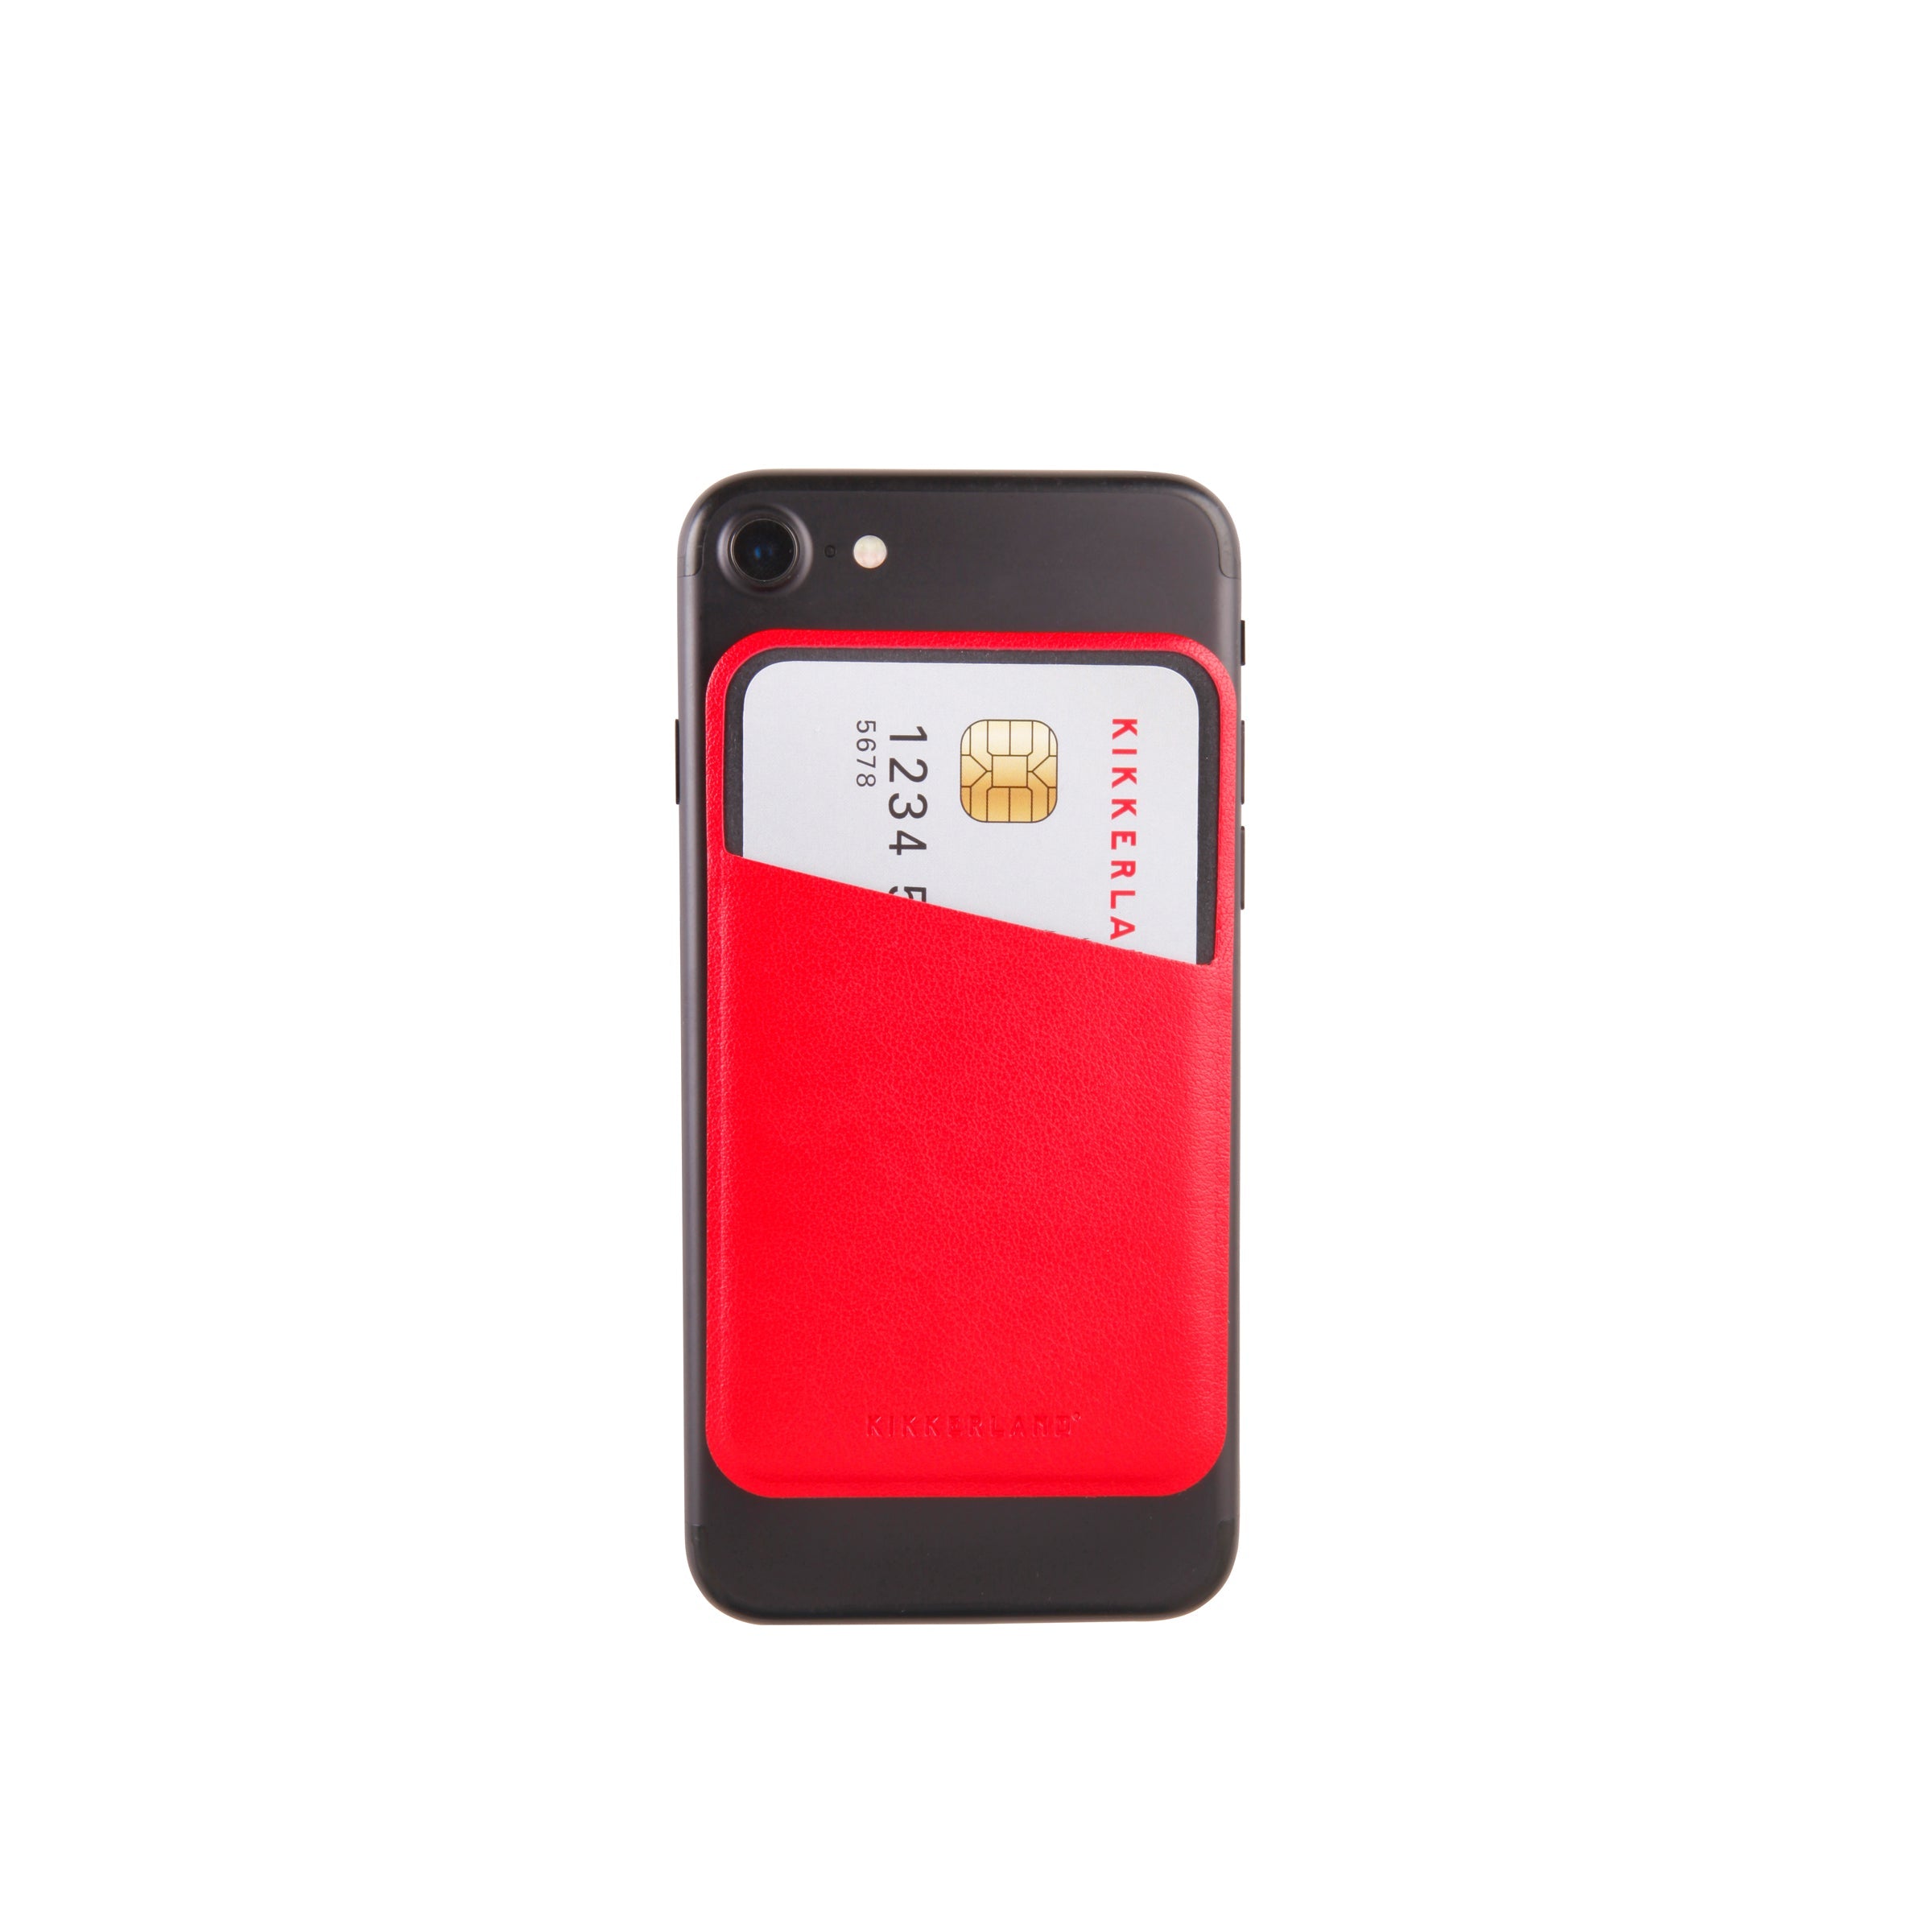 Kikkerland Safe Slot Tech Pocket Wallet For Phone or Tablet